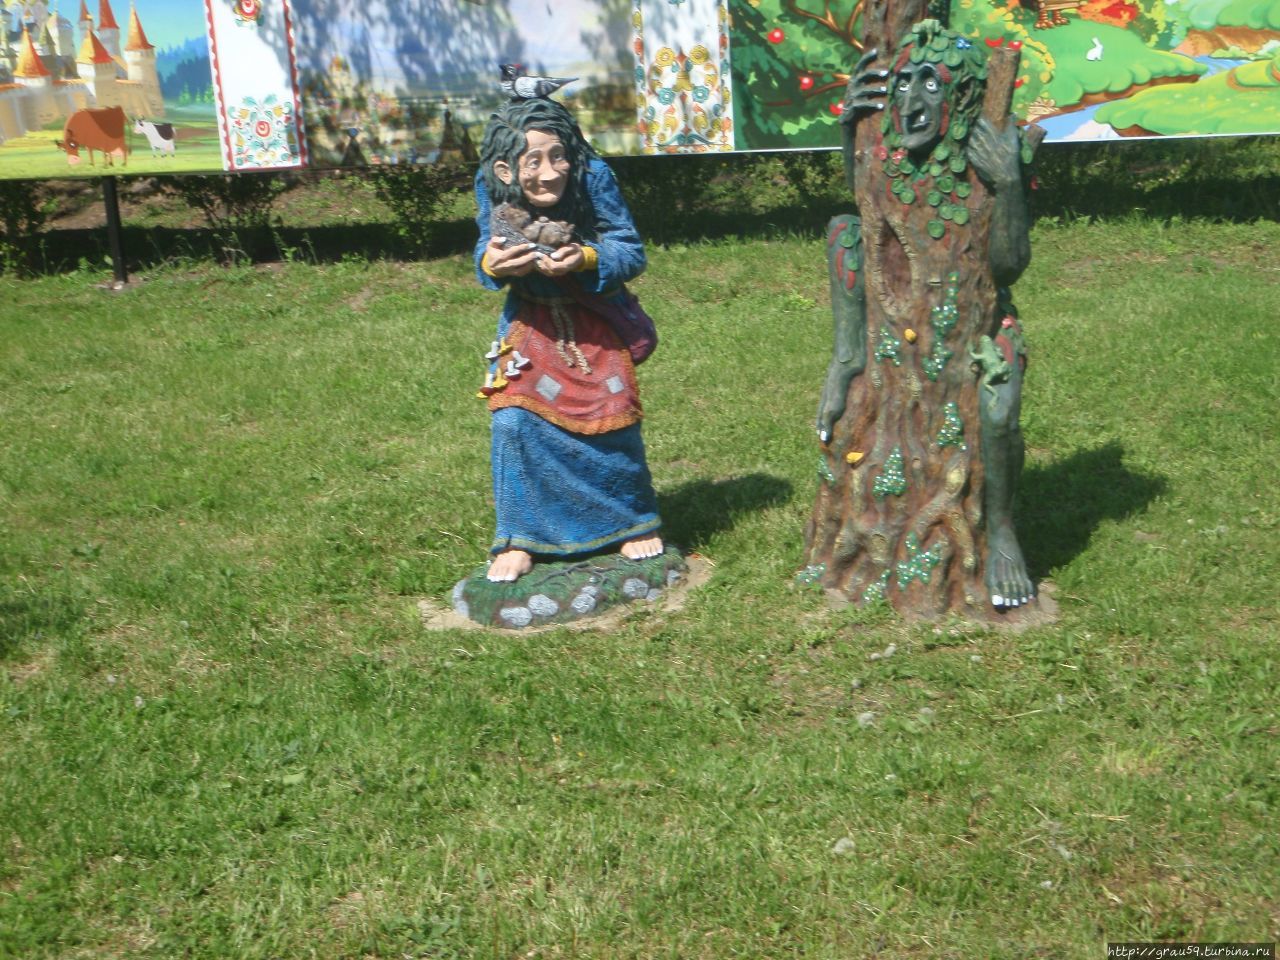 Во дворе музея кукол Чаплыгин, Россия